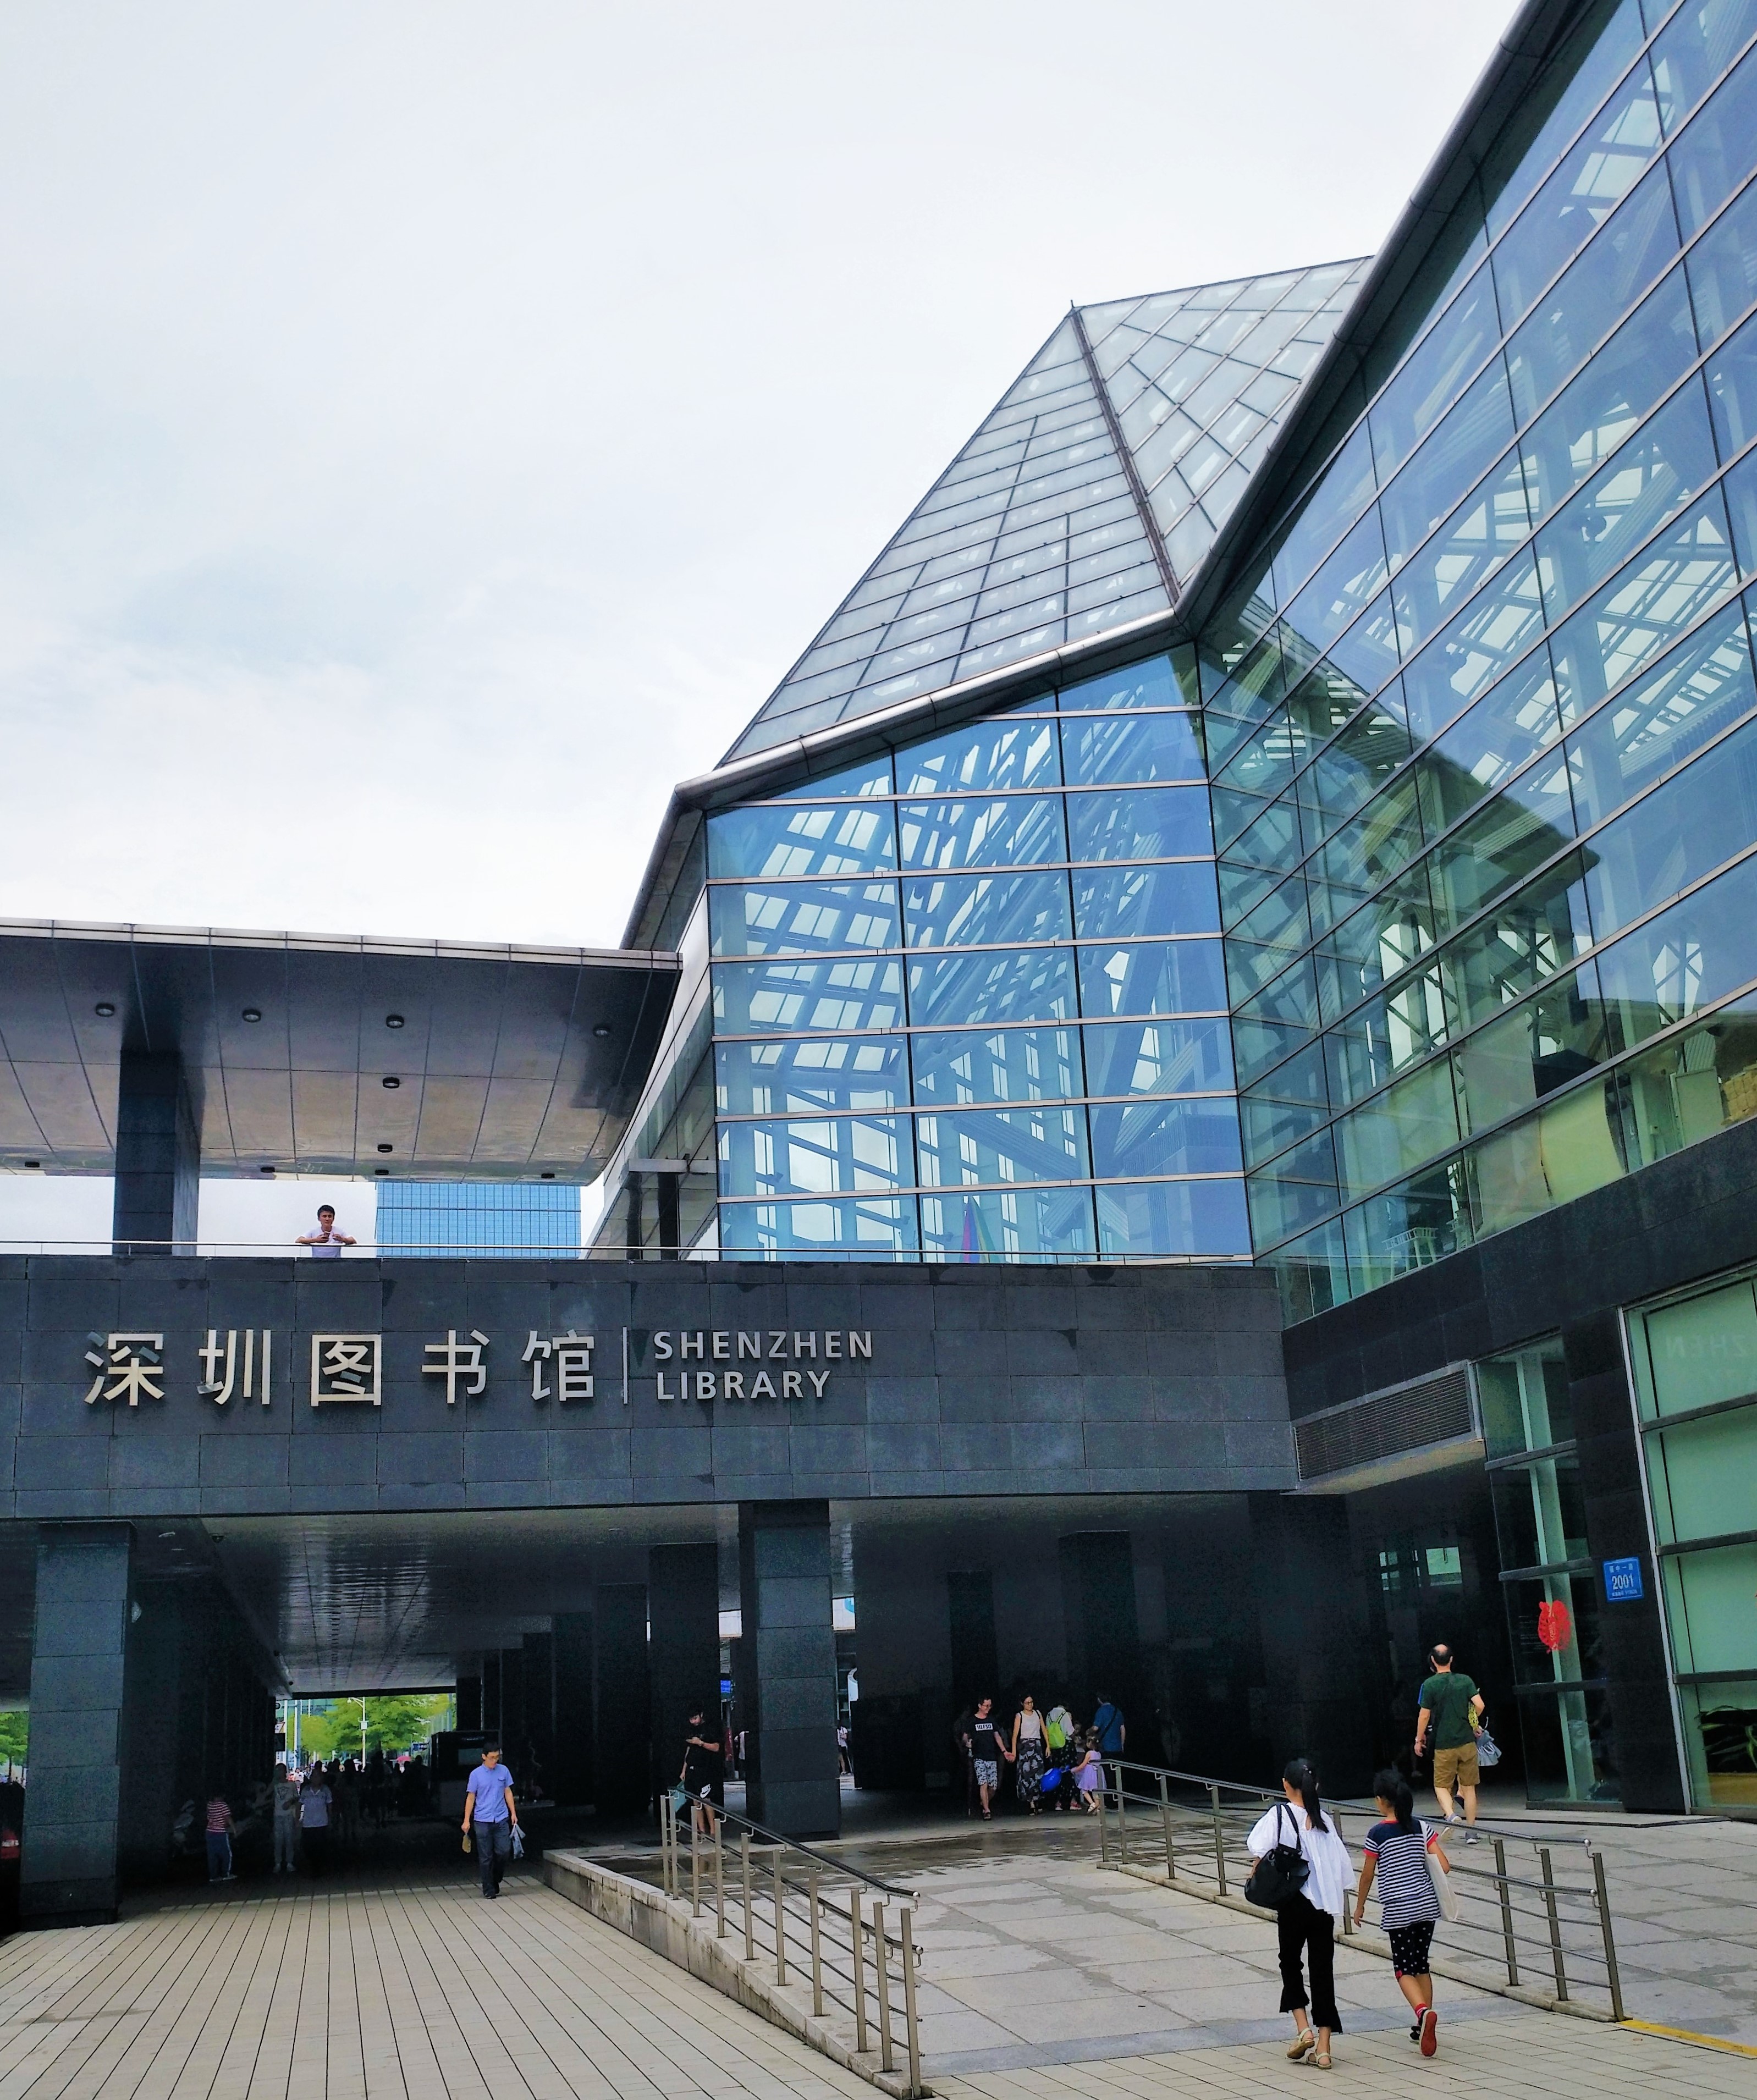 深圳图书馆2017年7月8日下午2点半,武汉大学信息管理学院学生会广州